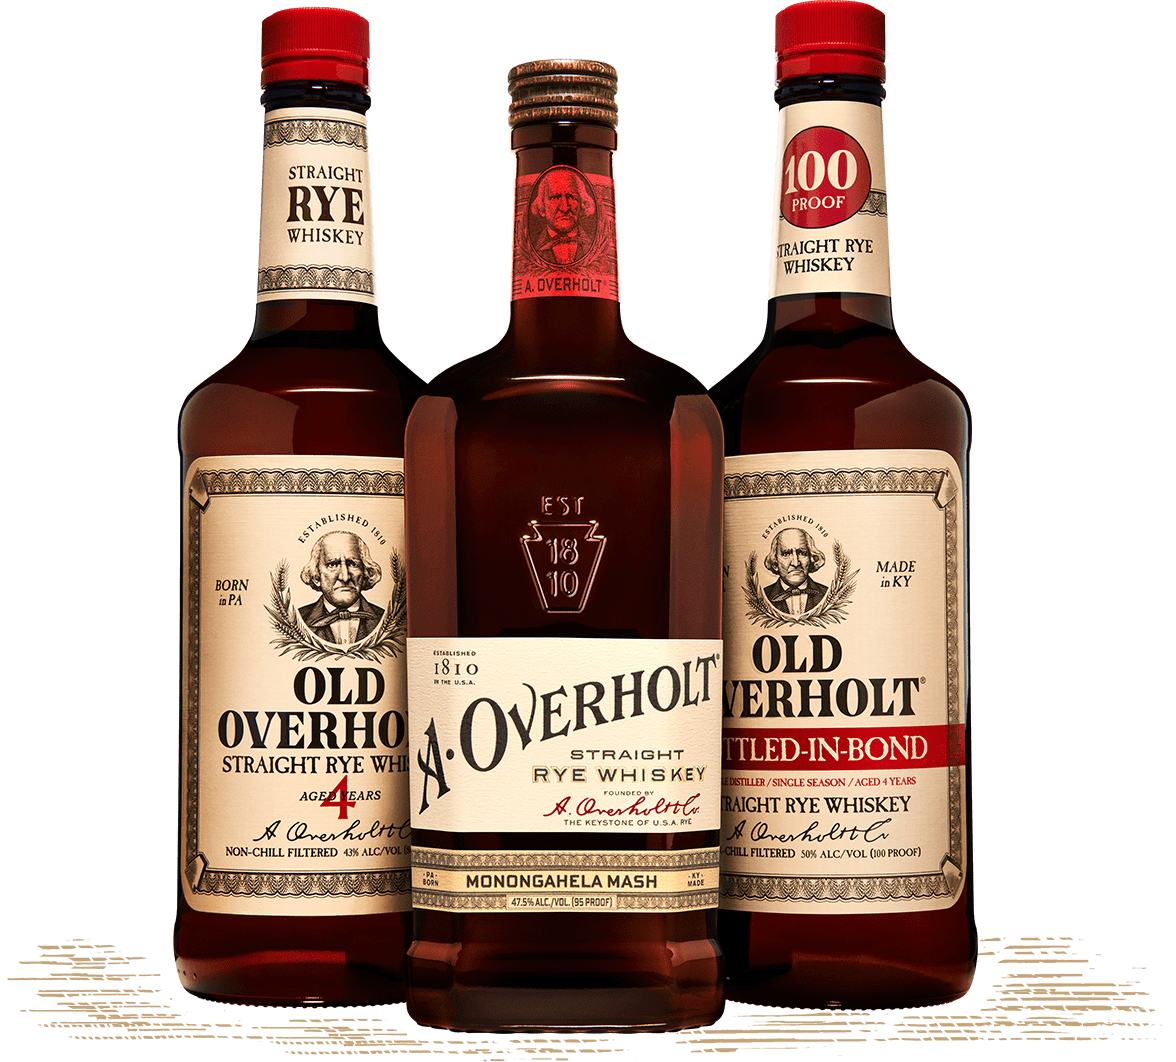 Overholt bottles